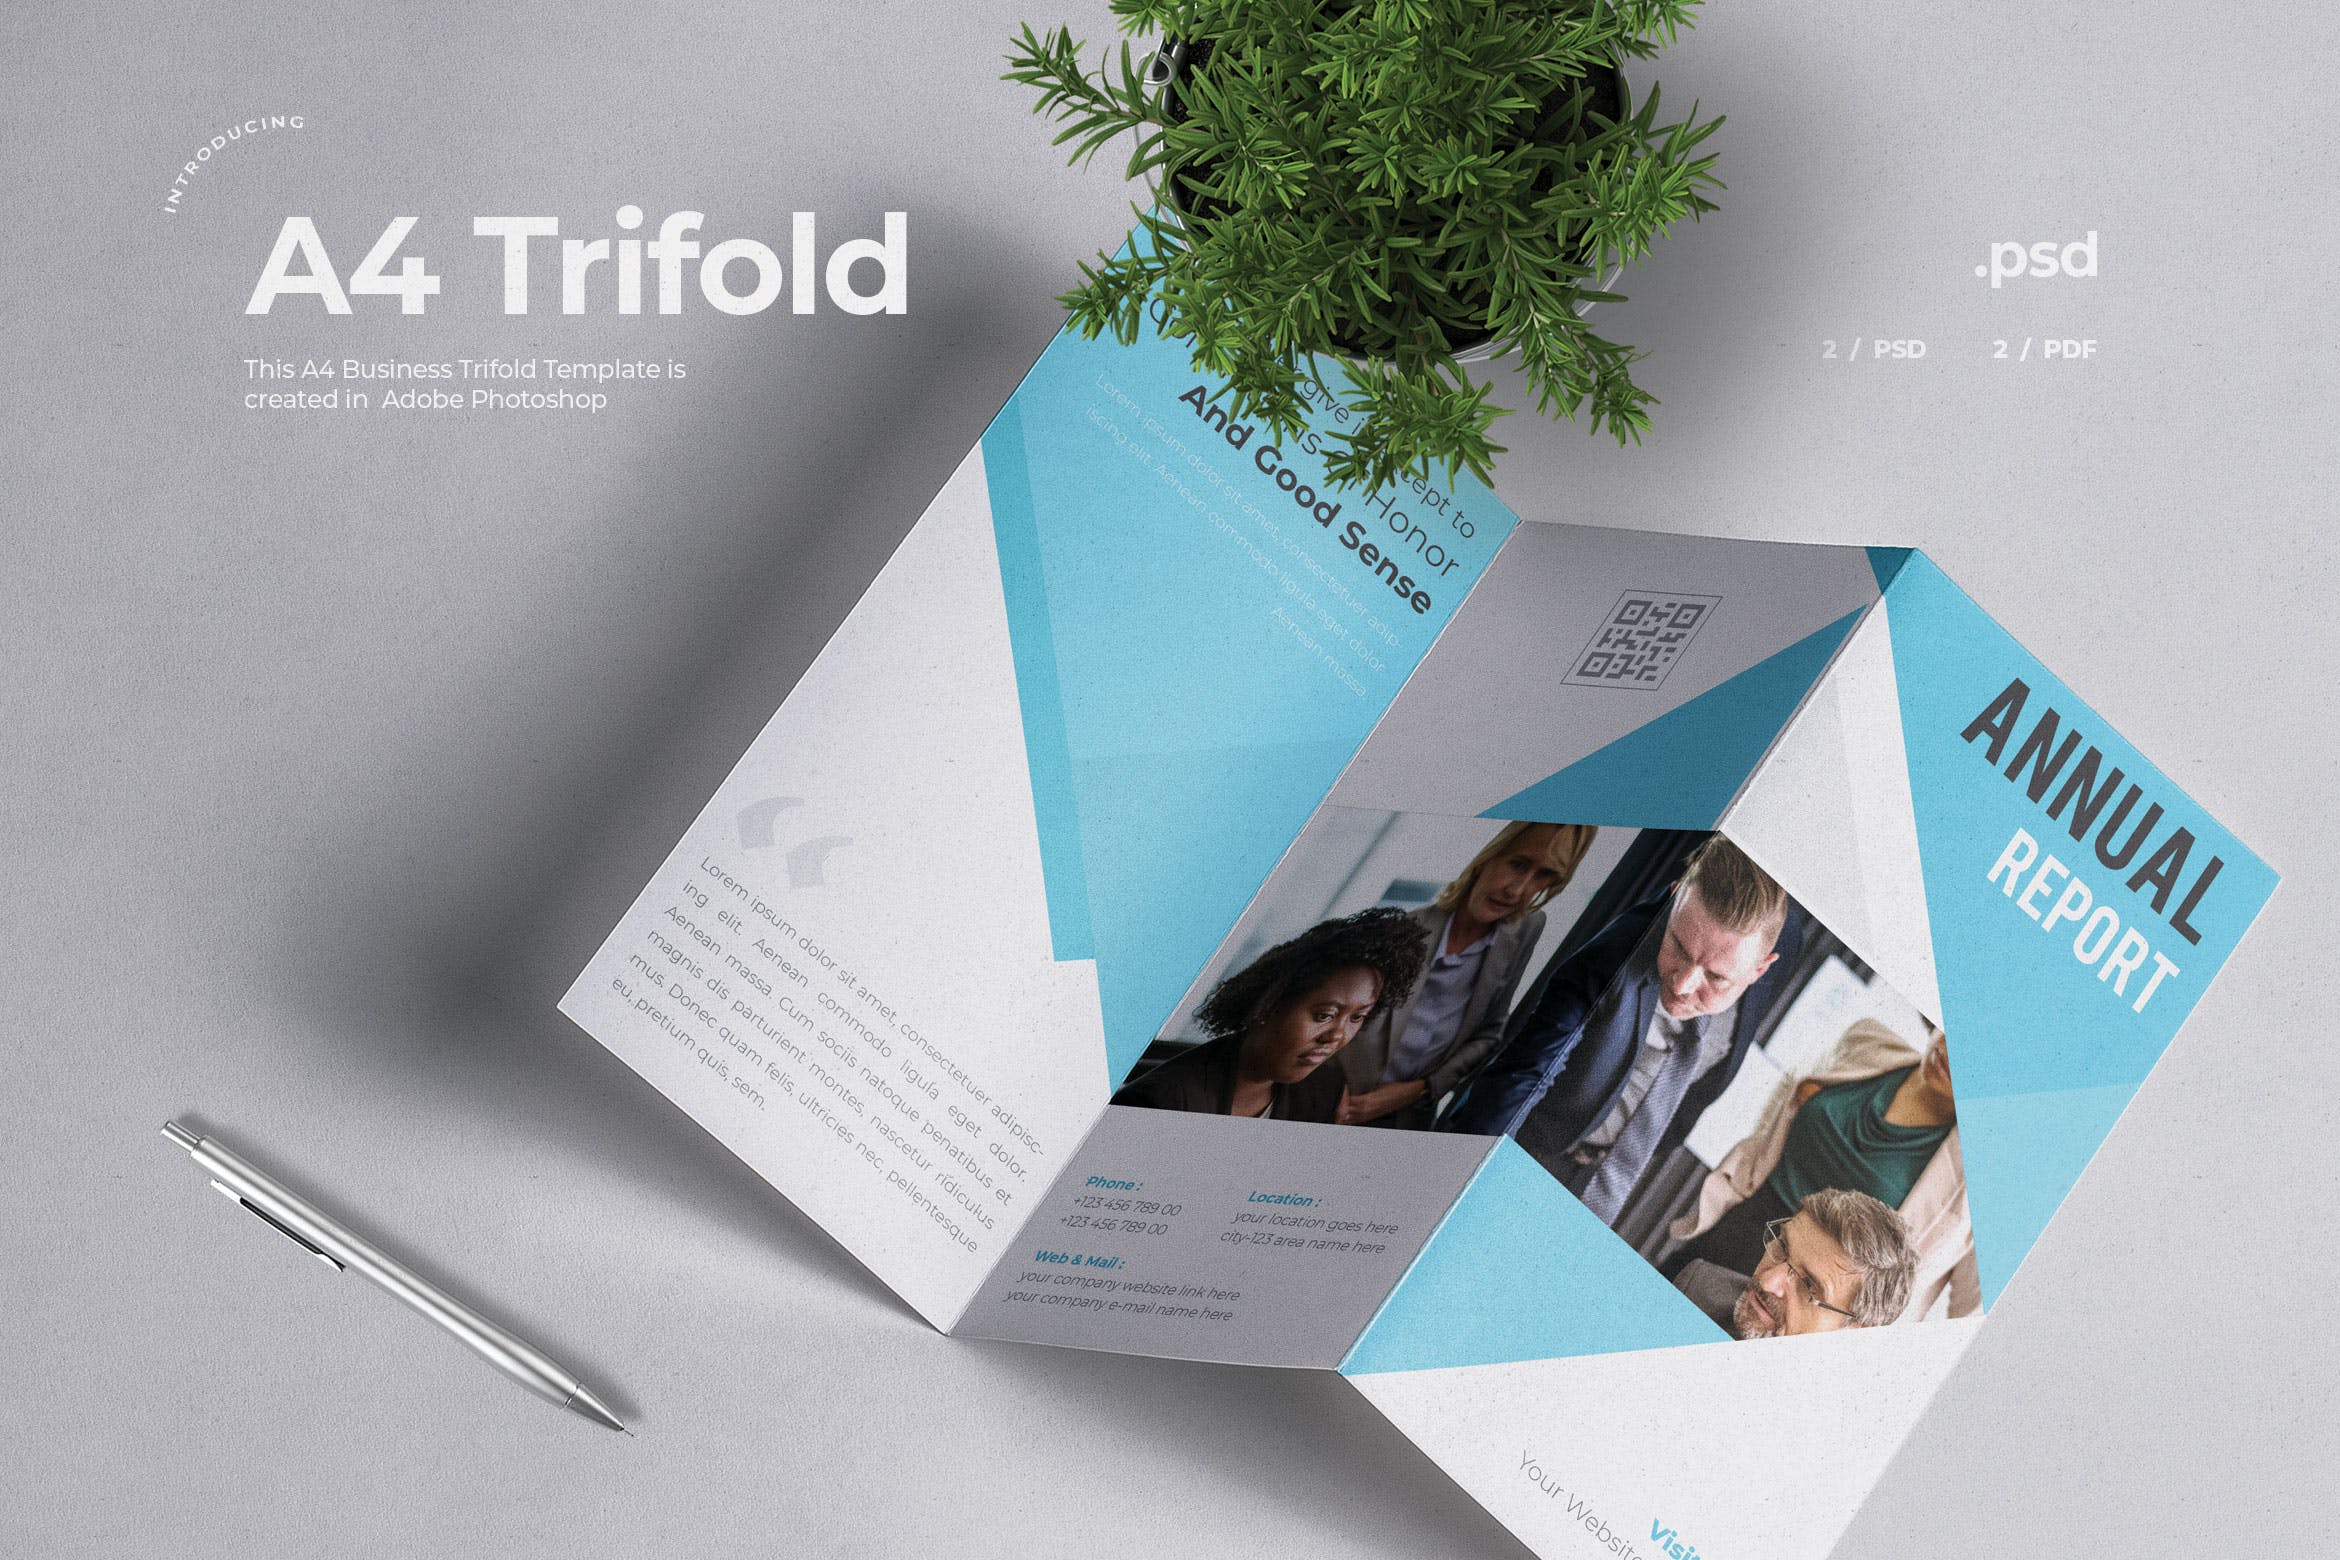 企业三折页版式设计宣传小册设计模板v4 Business Trifold Brochure插图